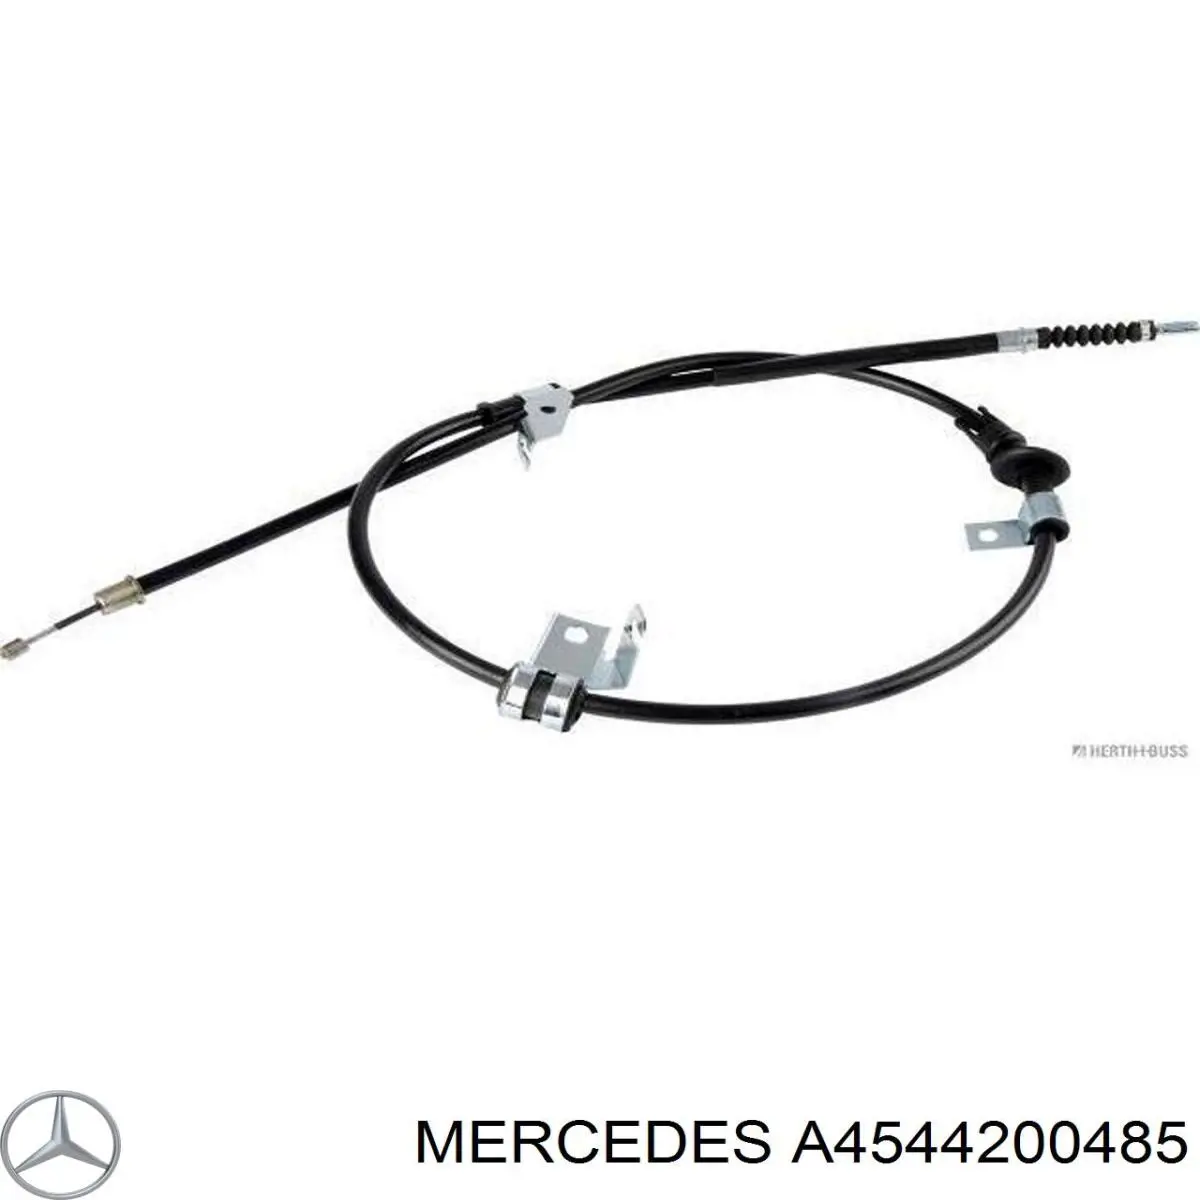 A4544200485 Mercedes трос ручного тормоза задний правый